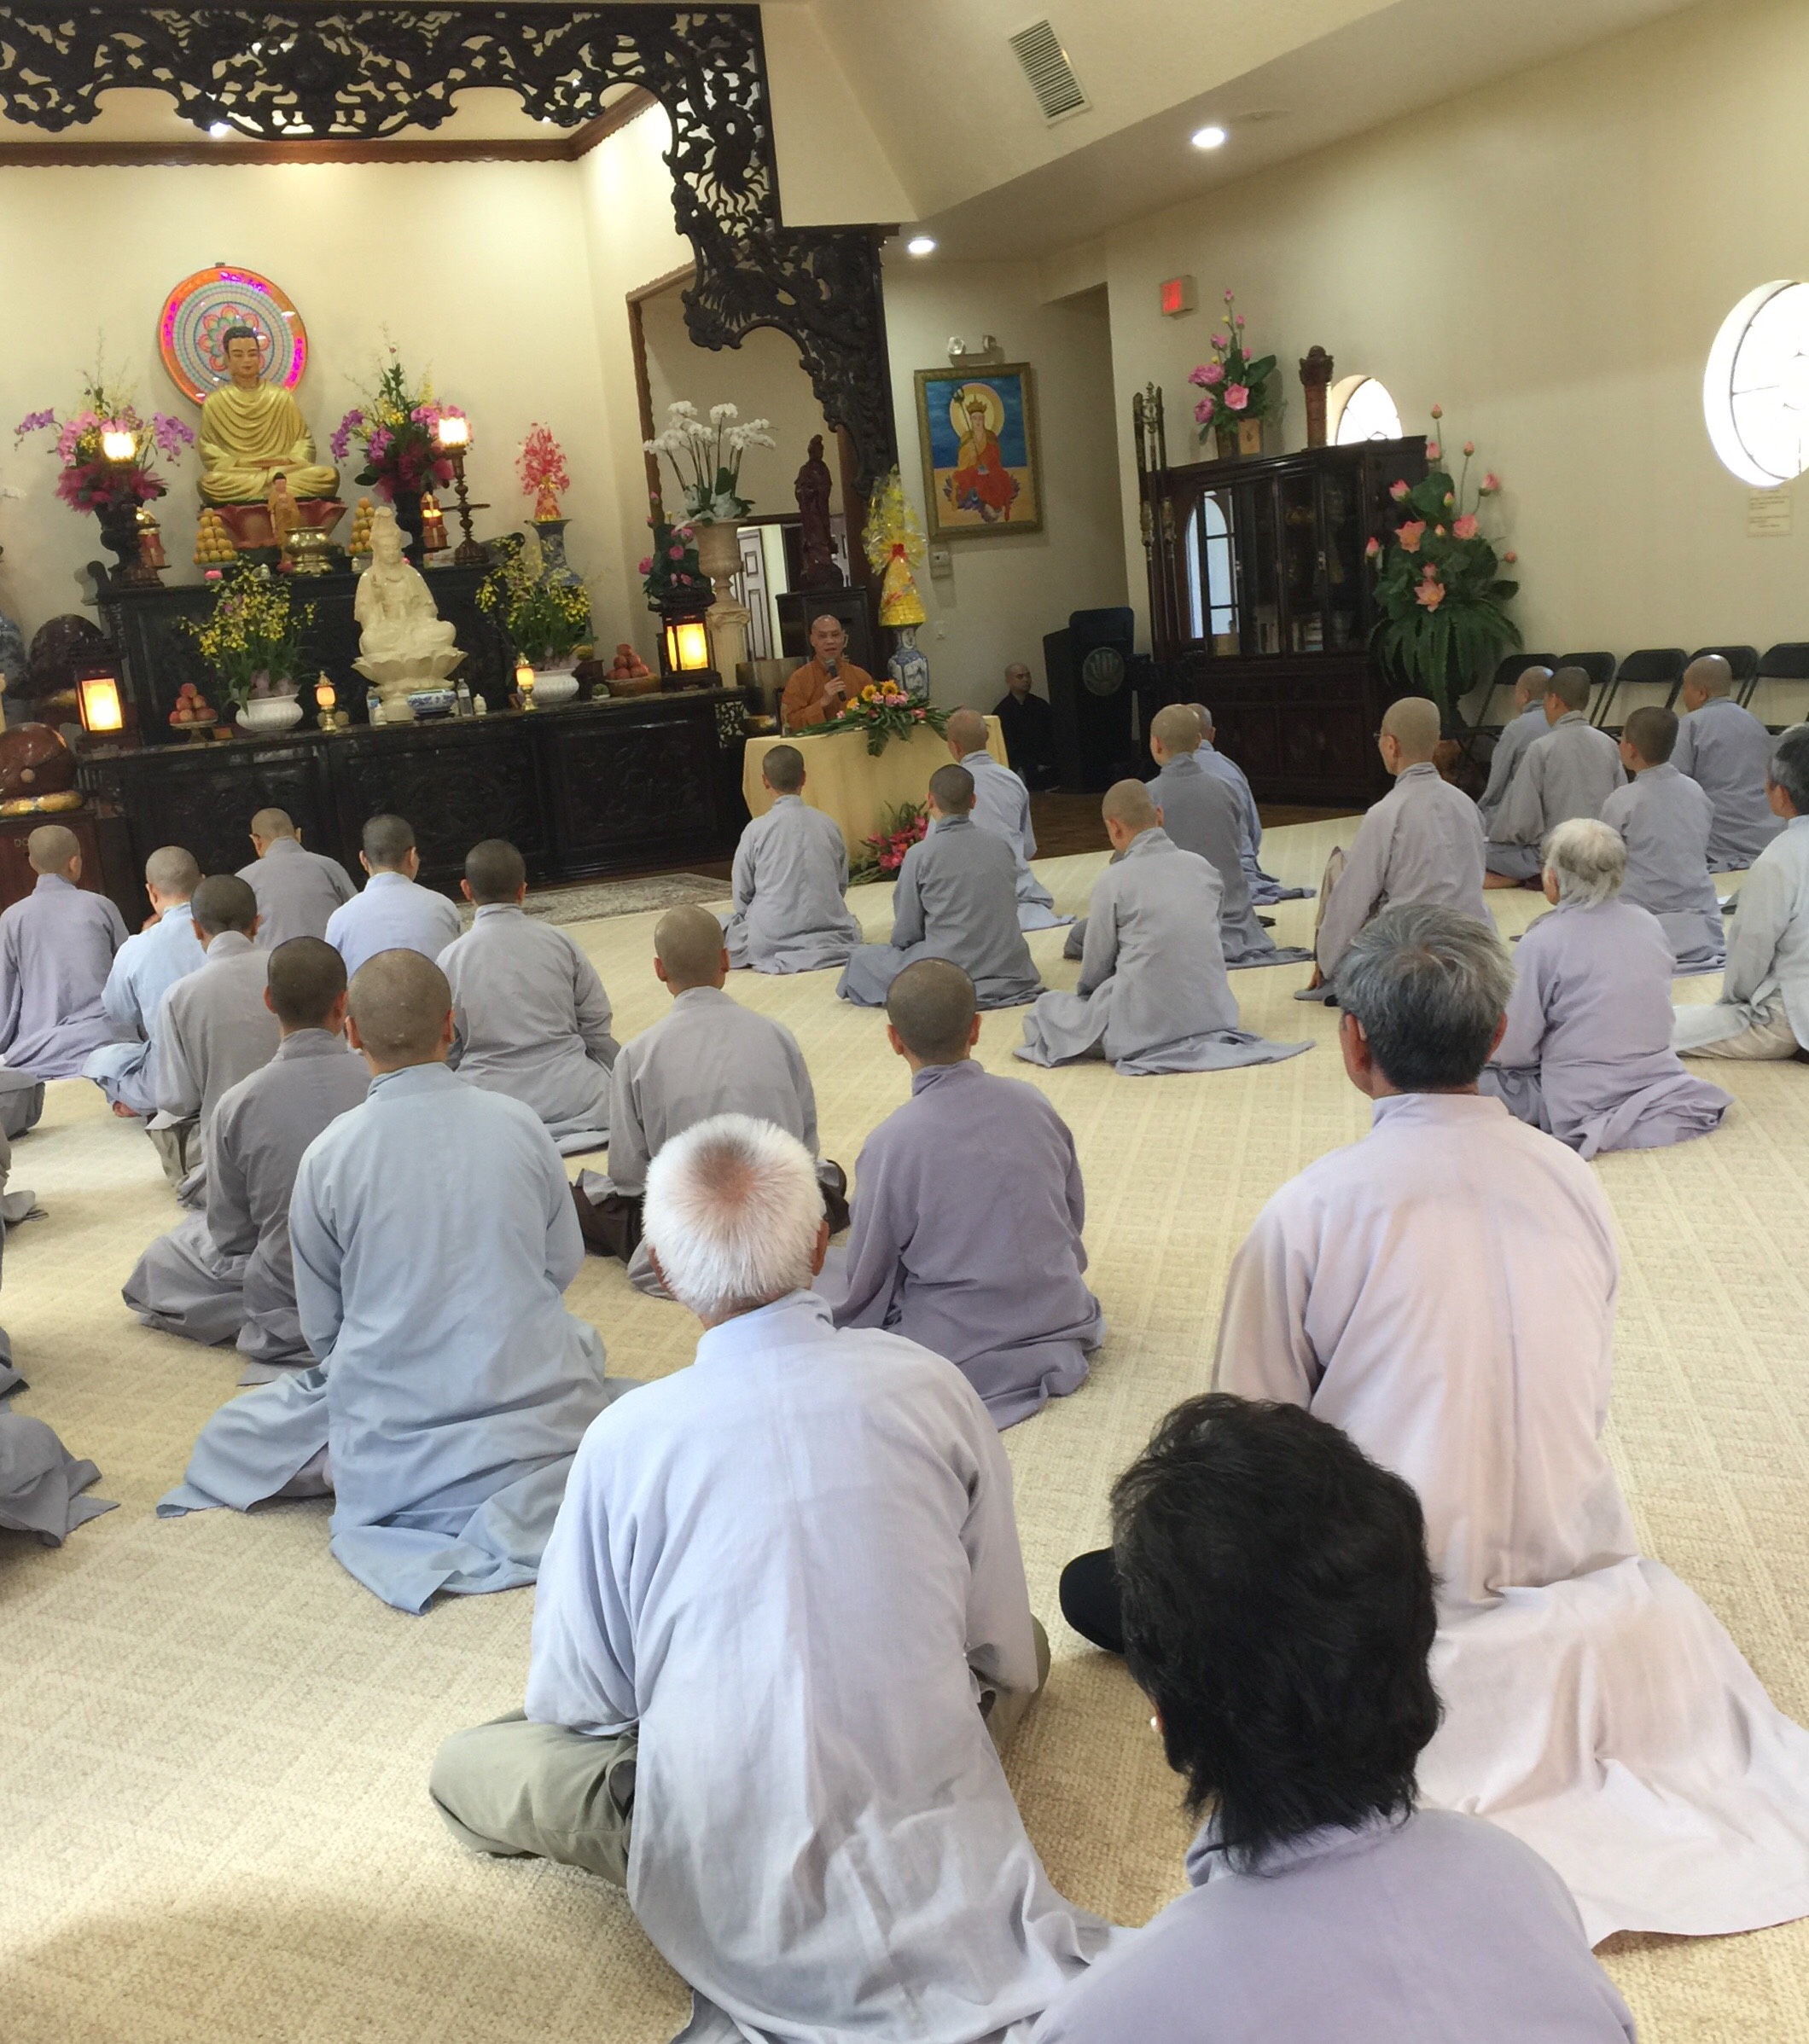 Pháp thoại “Chí nguyện tu hành” tại chùa Báo Ân, Orlando - Florida